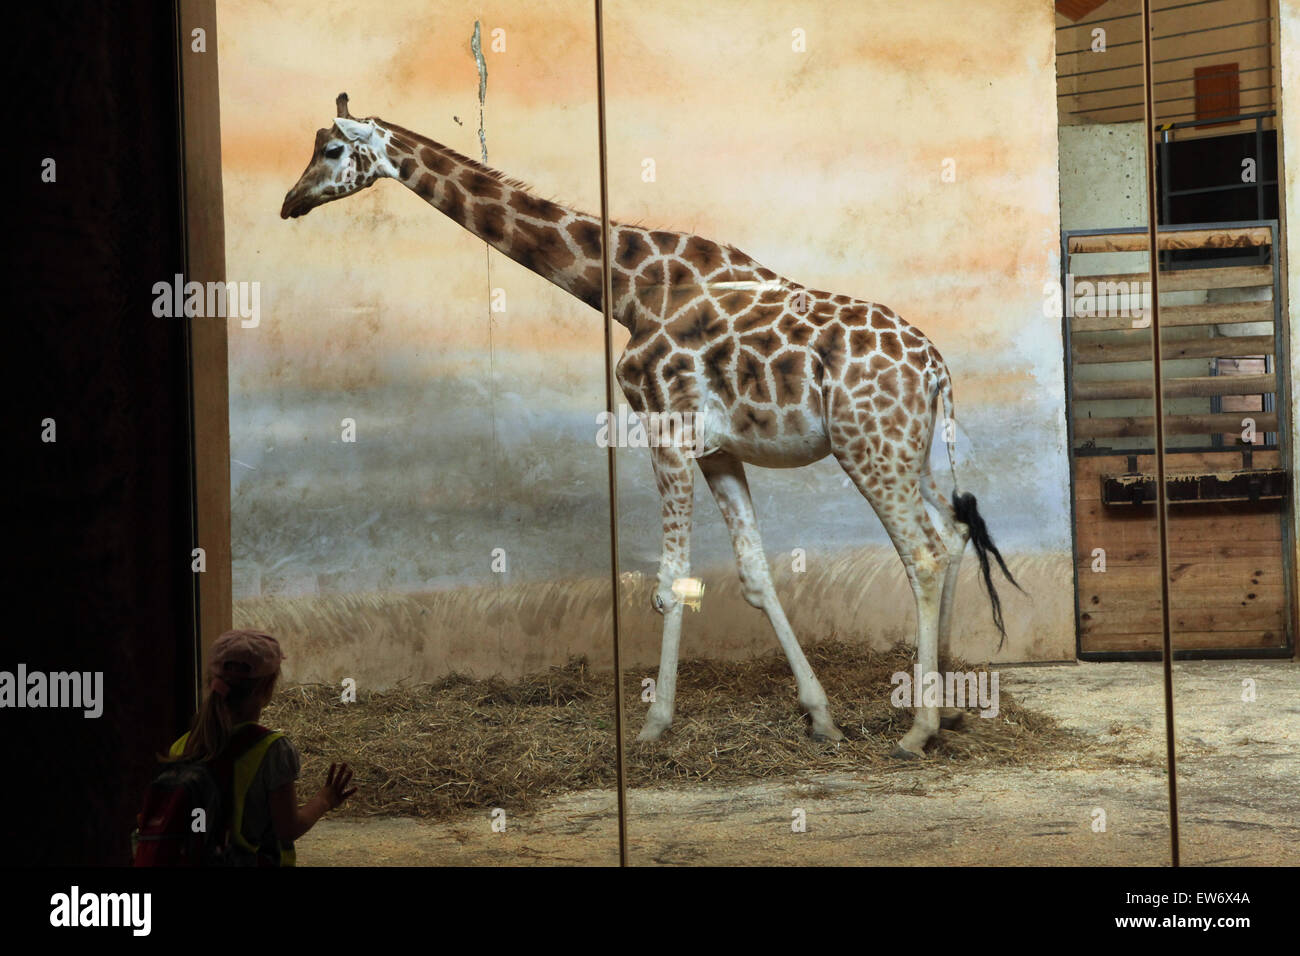 Visitatore guarda la Rothschild la giraffa (Giraffa camelopardalis rothschildi) presso lo Zoo di Praga, Repubblica Ceca. Foto Stock